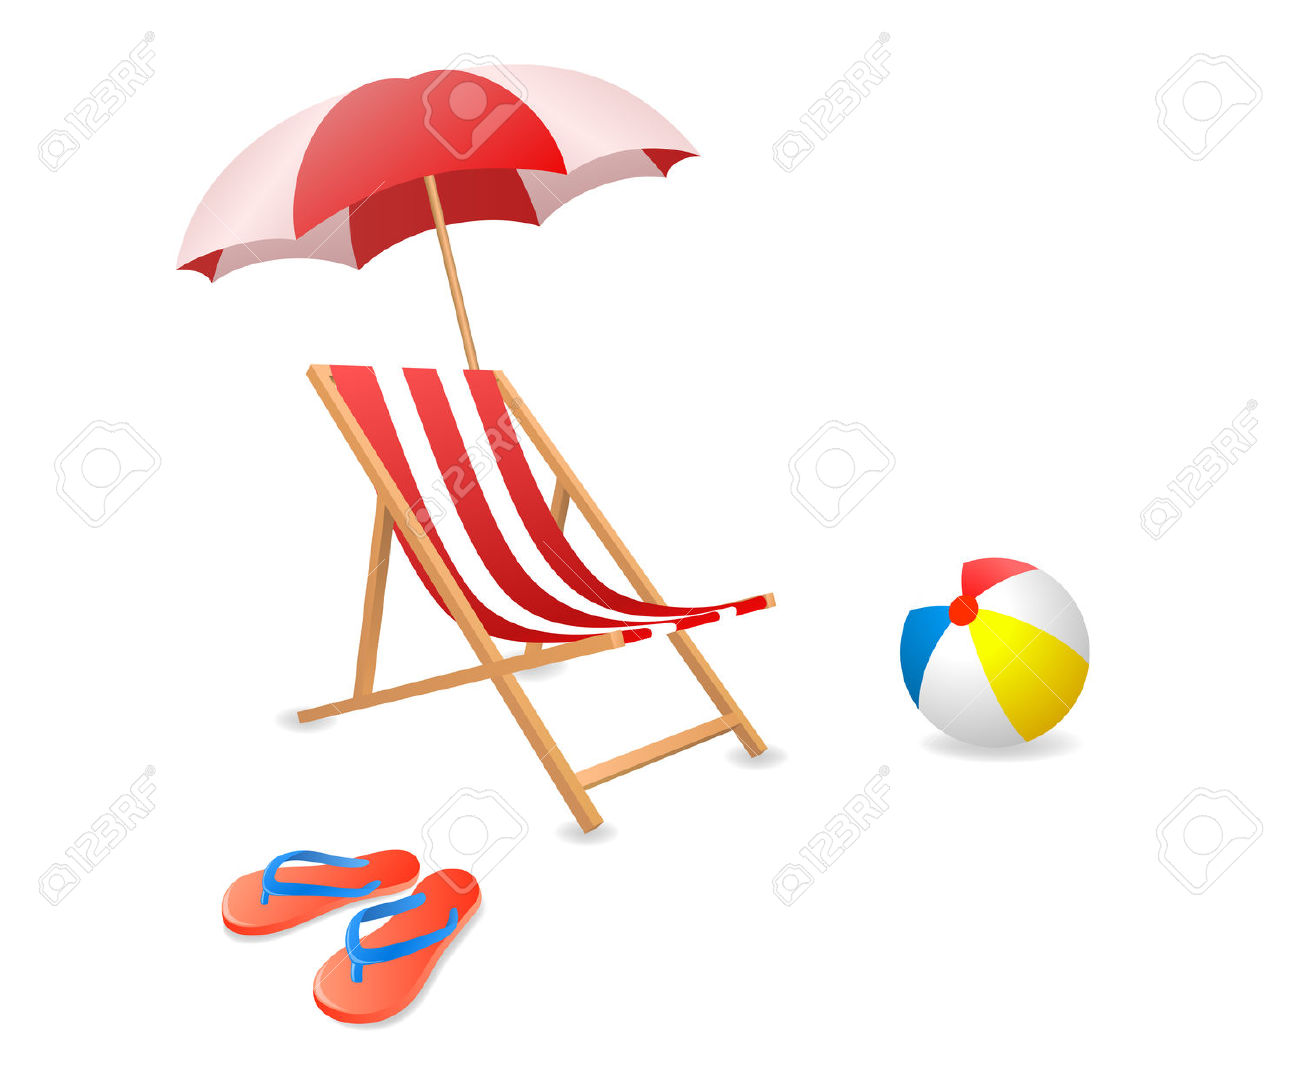 clipart beach chair and umbrella - photo #25